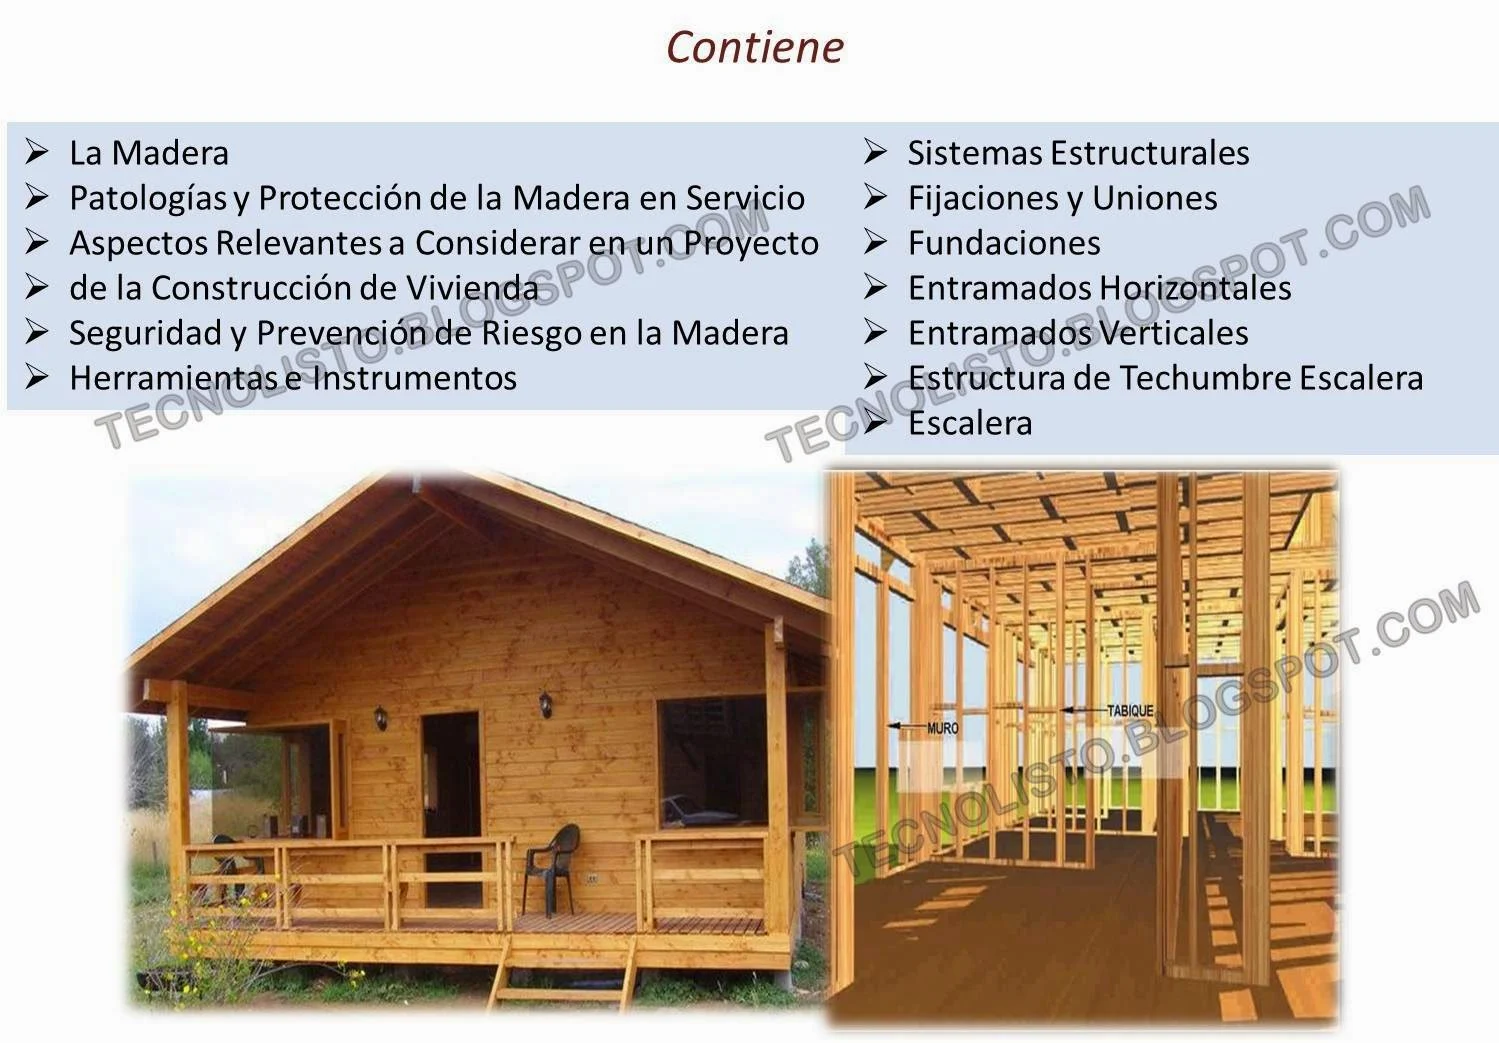 "Patologías y protección de la madera para construir casas"